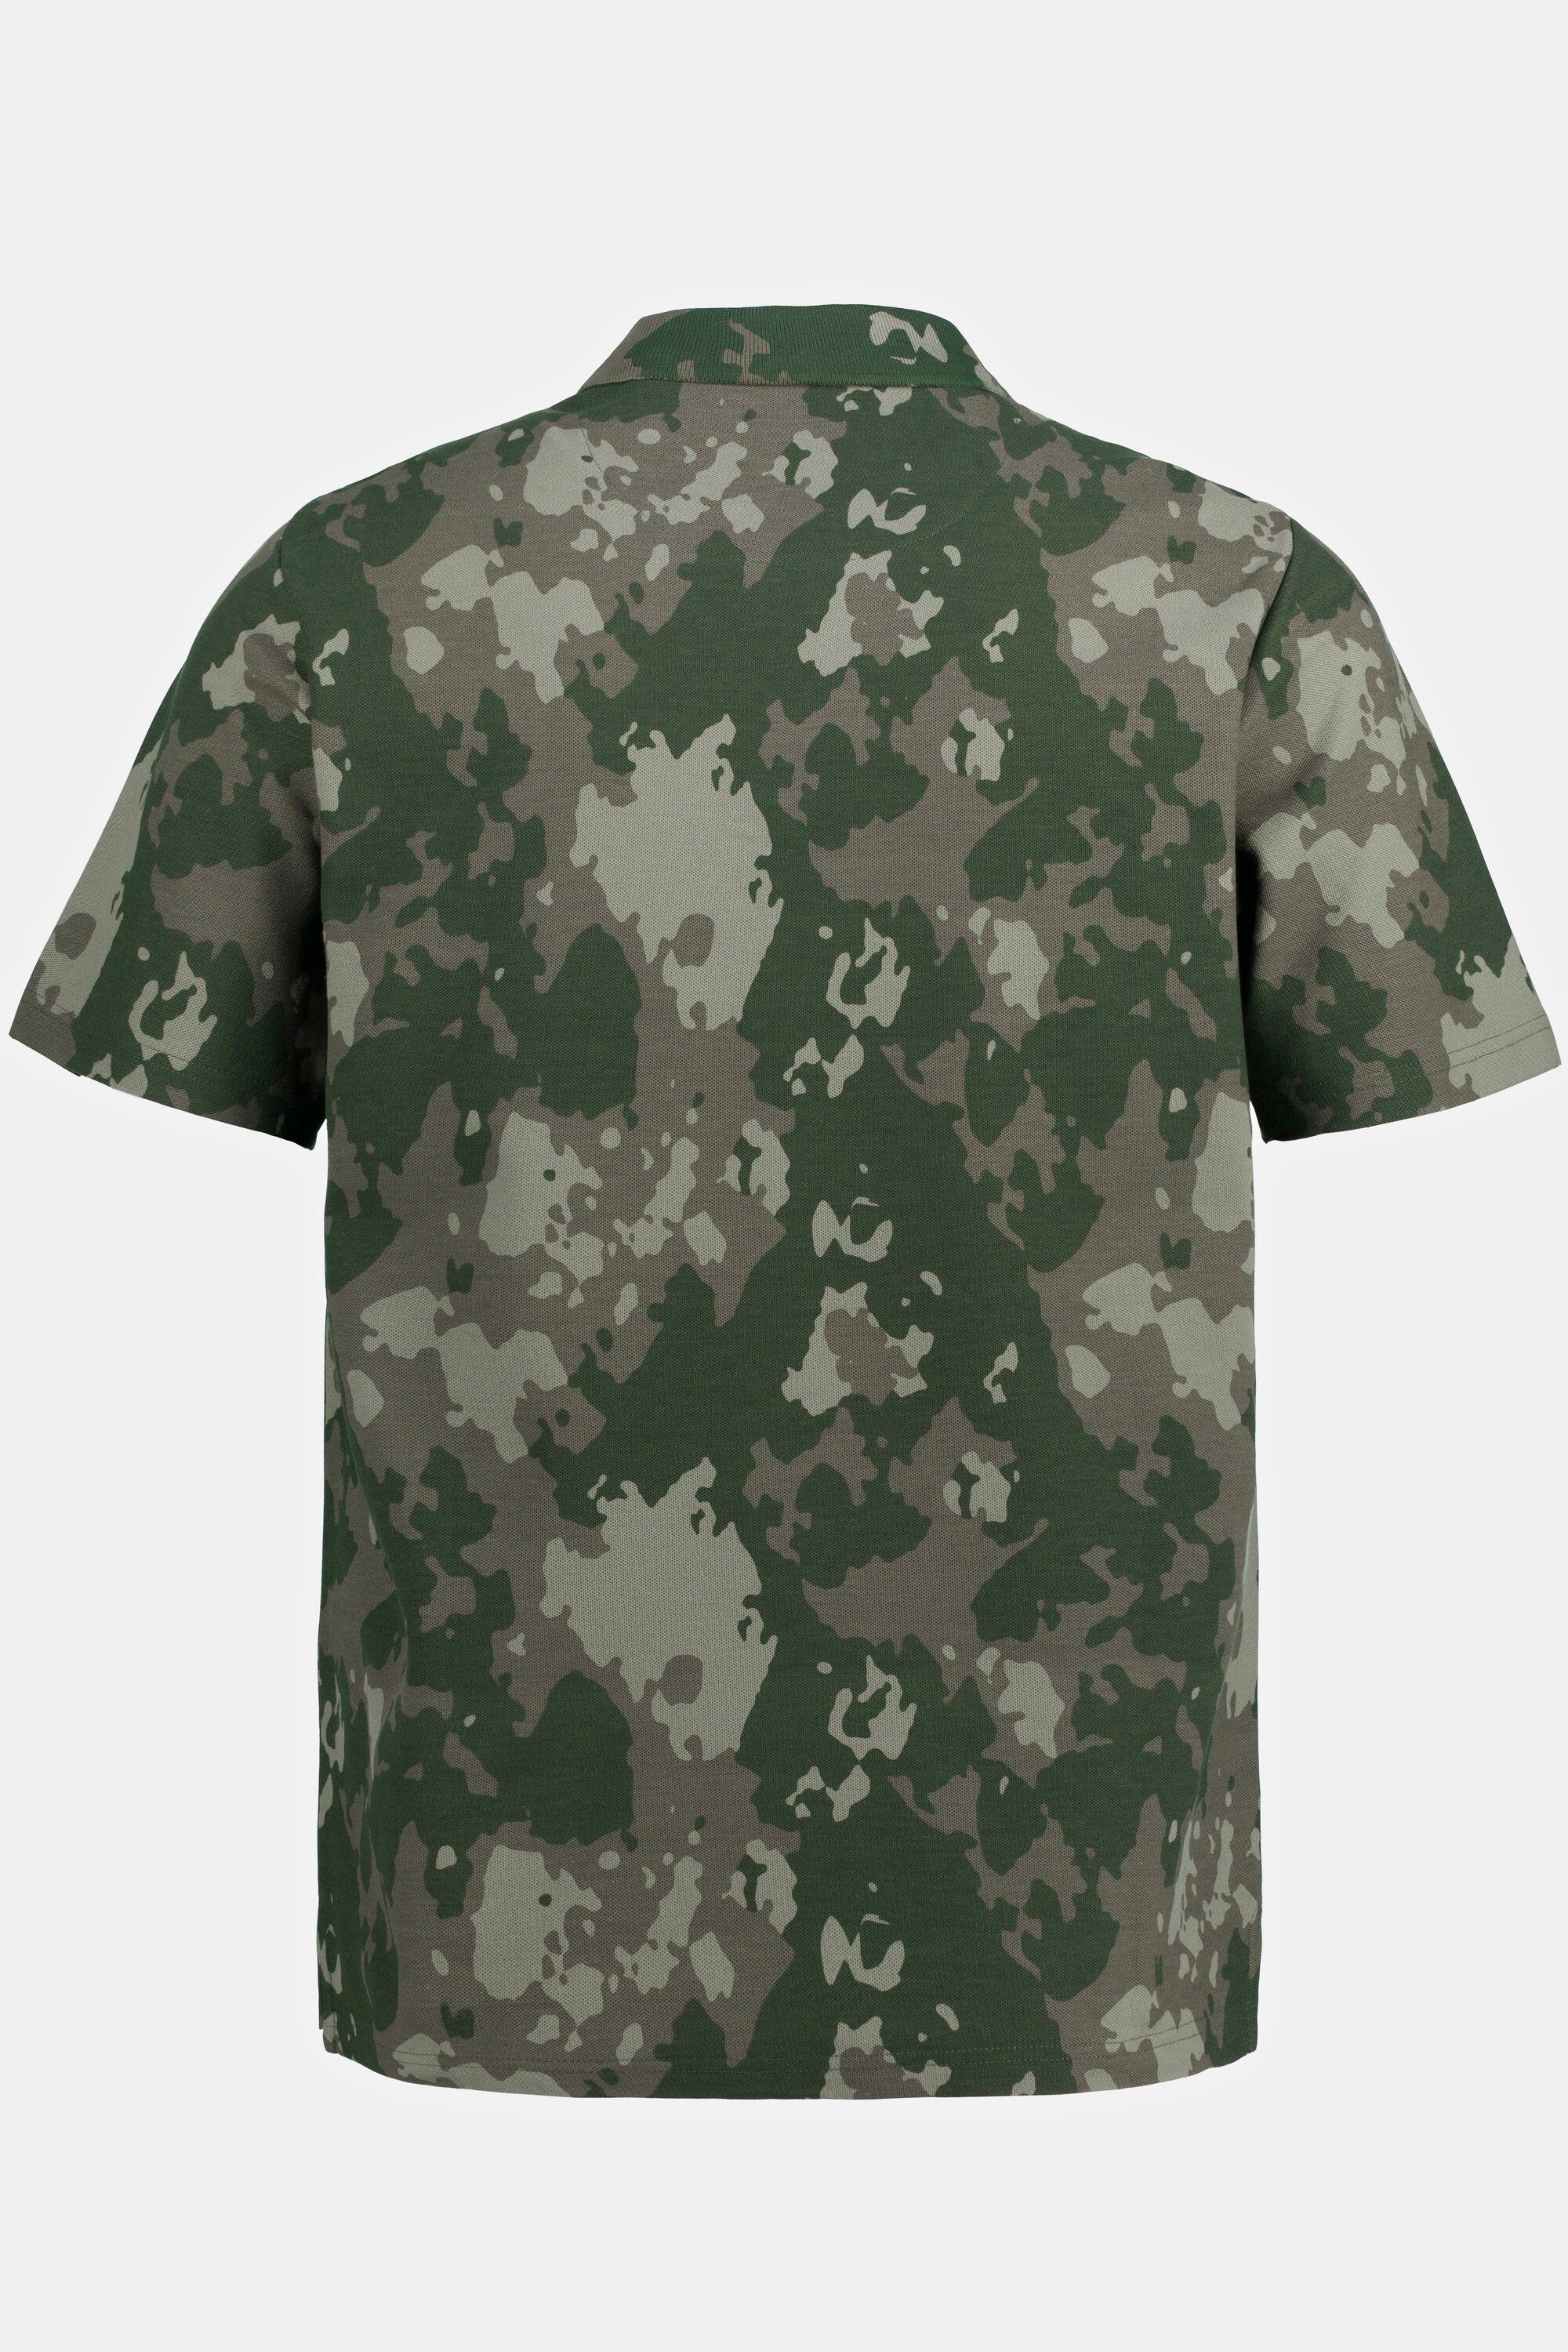 Print Poloshirt Camouflage Halbarm Poloshirt JP1880